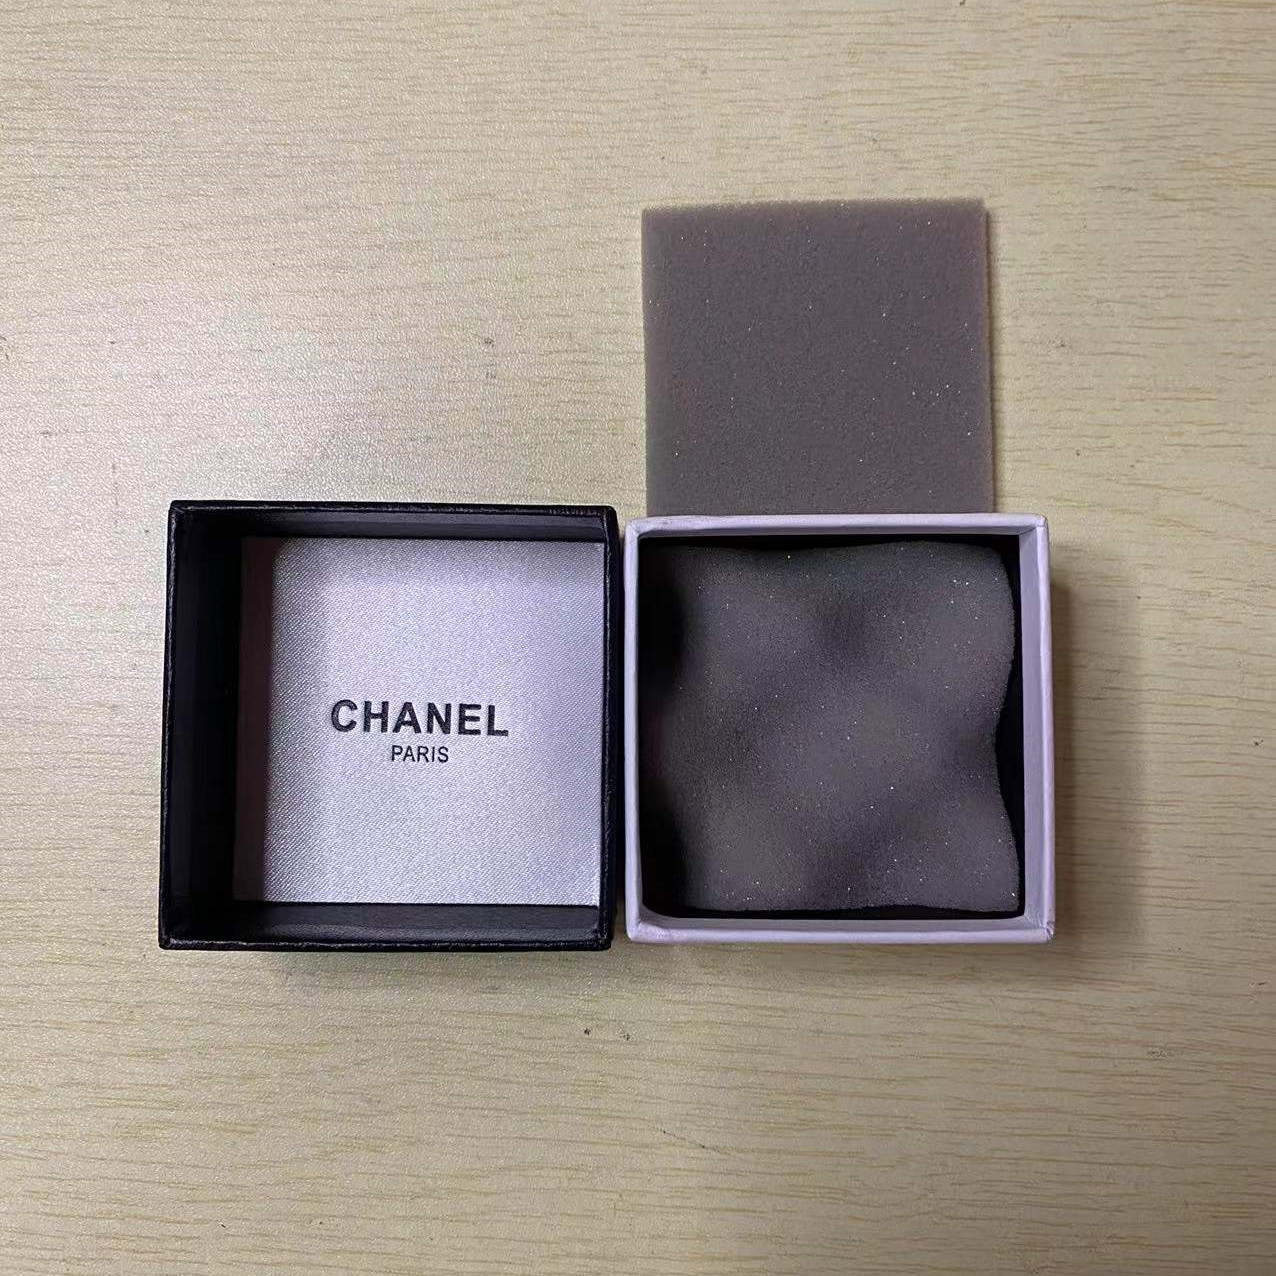 Chanel jewelry box 1pcs size S